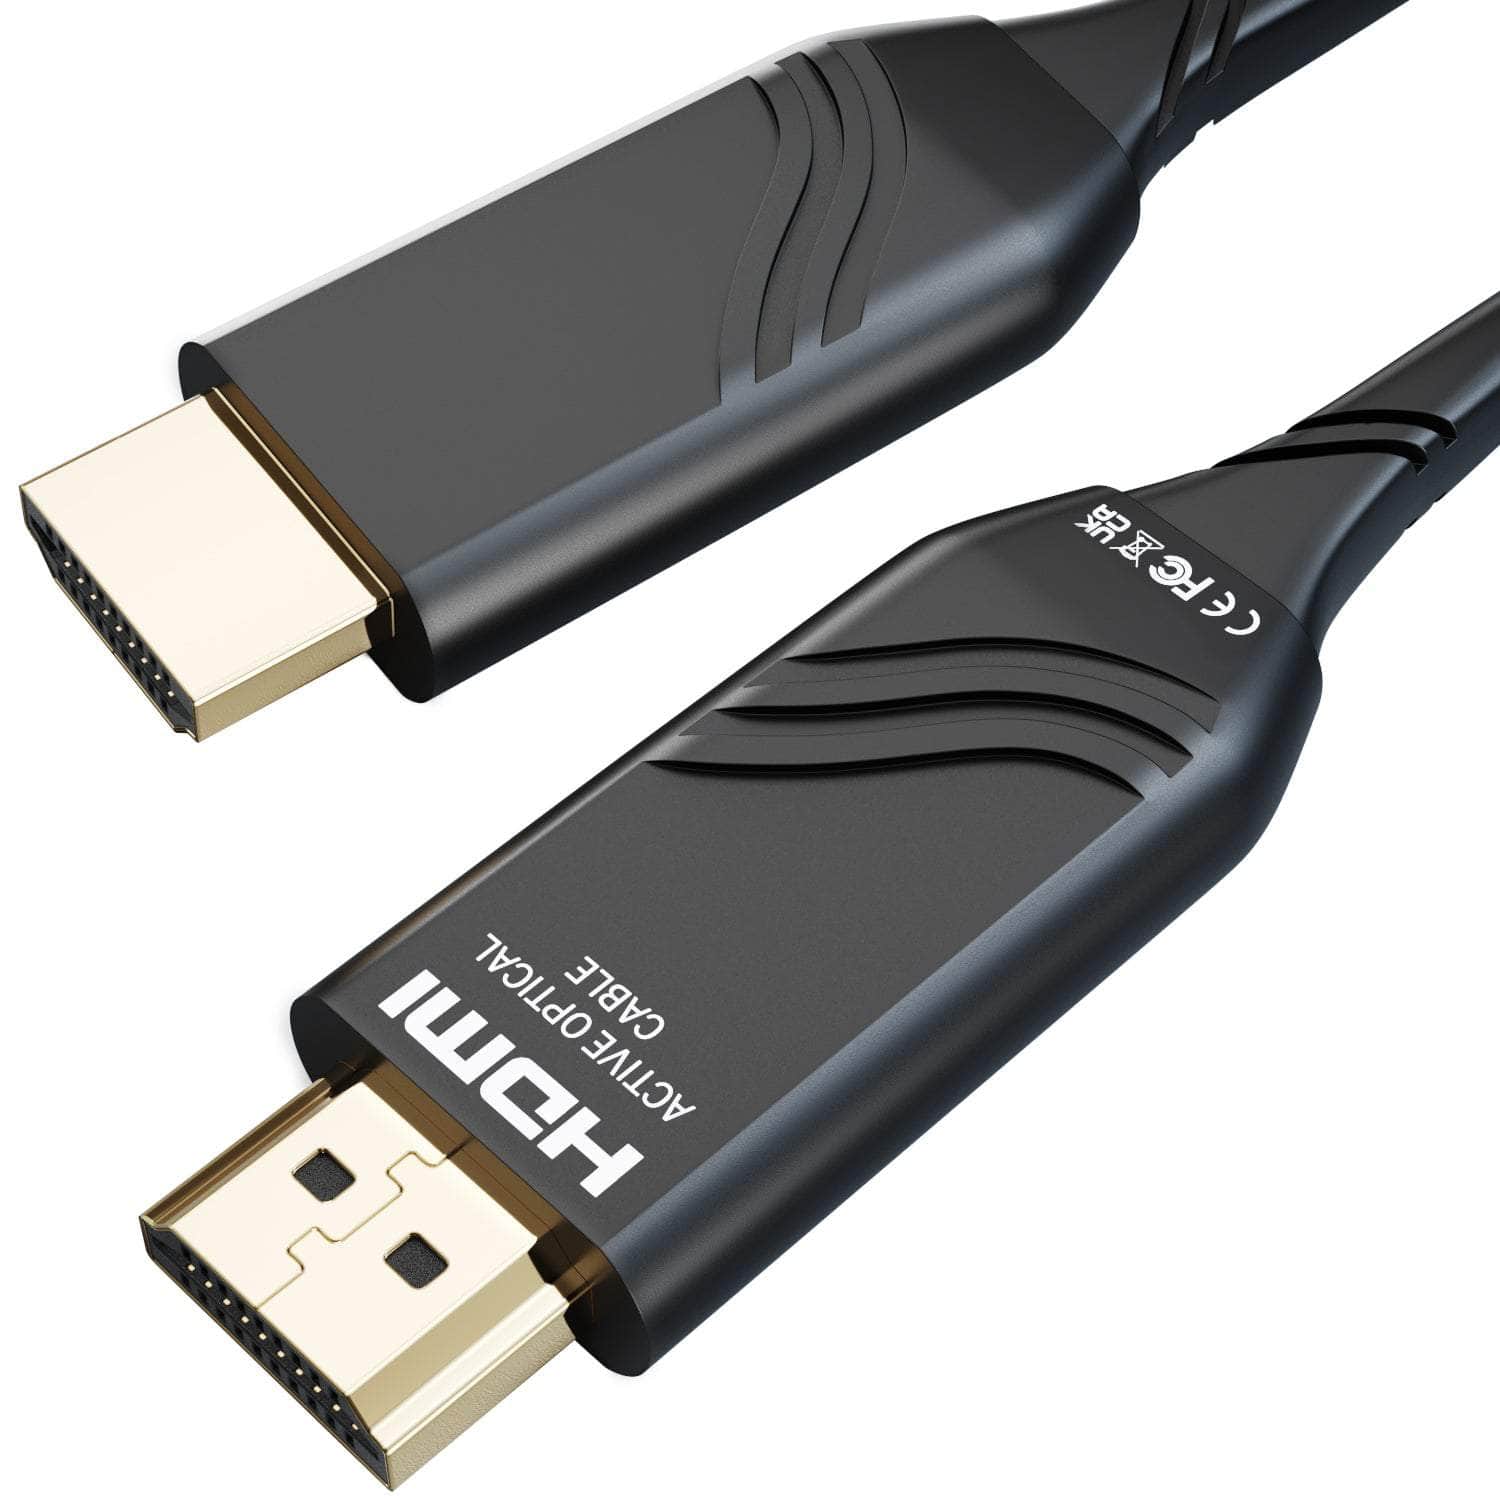 8K Ultra High Speed HDMI 2.1 Kabel – 48G, 8K@60Hz, offiziell getestet und  lizenziert, schwarz/blau